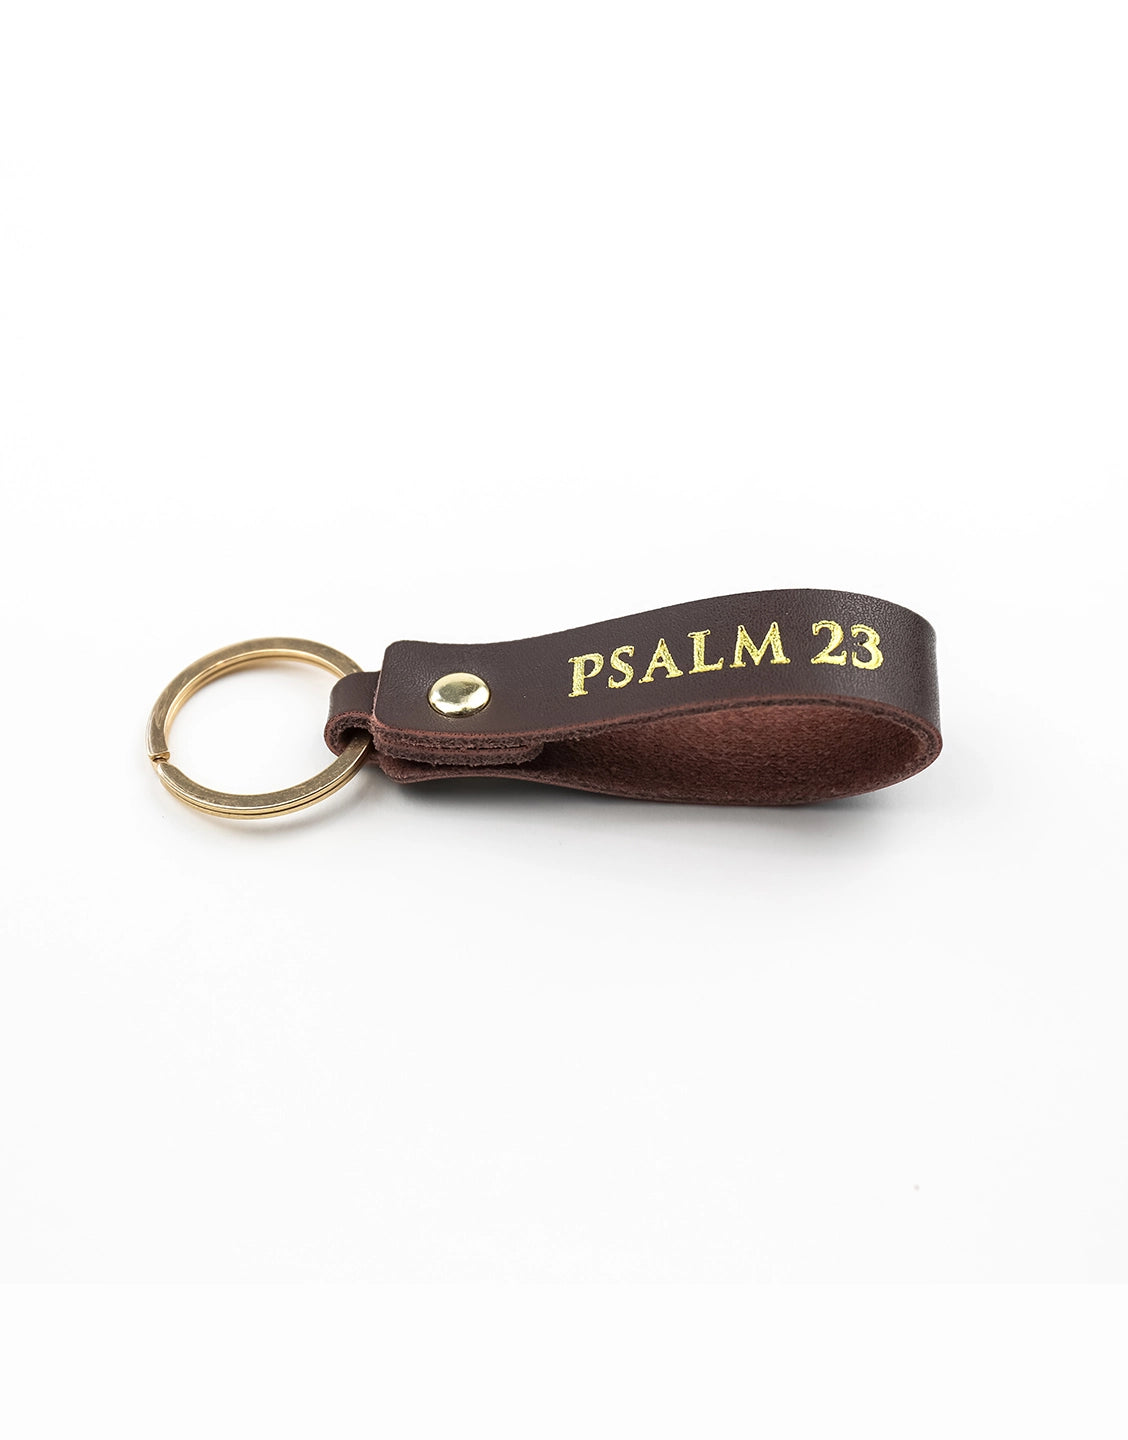 Psalm 23 Leather Keychain